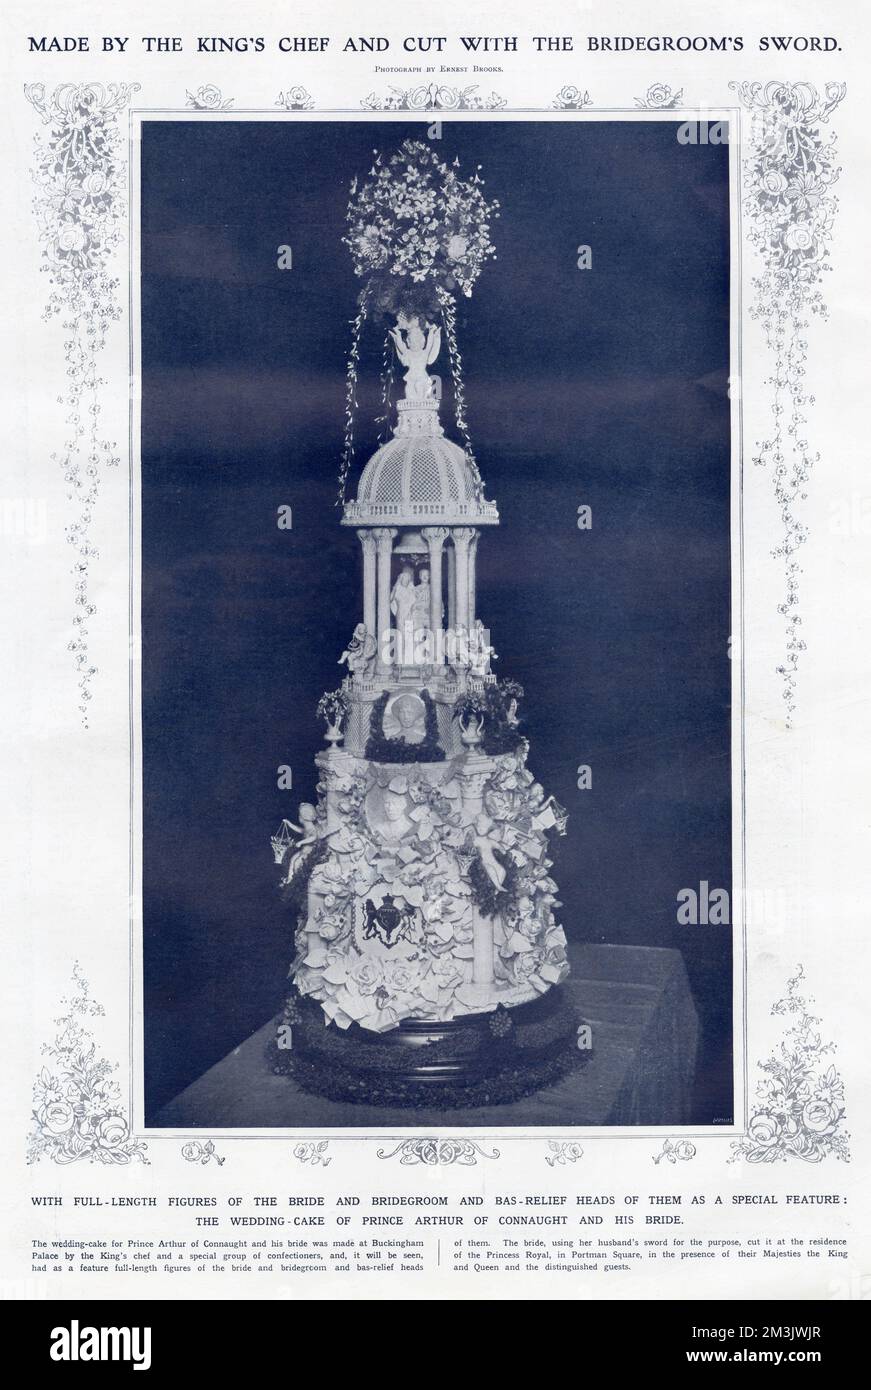 Hochzeitstorte für die Hochzeit von Arthur of Connaught (Enkel von Königin Victoria) mit Alexandra, Herzogin von Fife im Jahr 1913. Der Kuchen wurde im Buckingham Palace vom Koch des Königs und einer besonderen Gruppe von Konditoren hergestellt und enthielt Figuren der Braut und des Bräutigams in voller Länge sowie deren Köpfe. Stockfoto